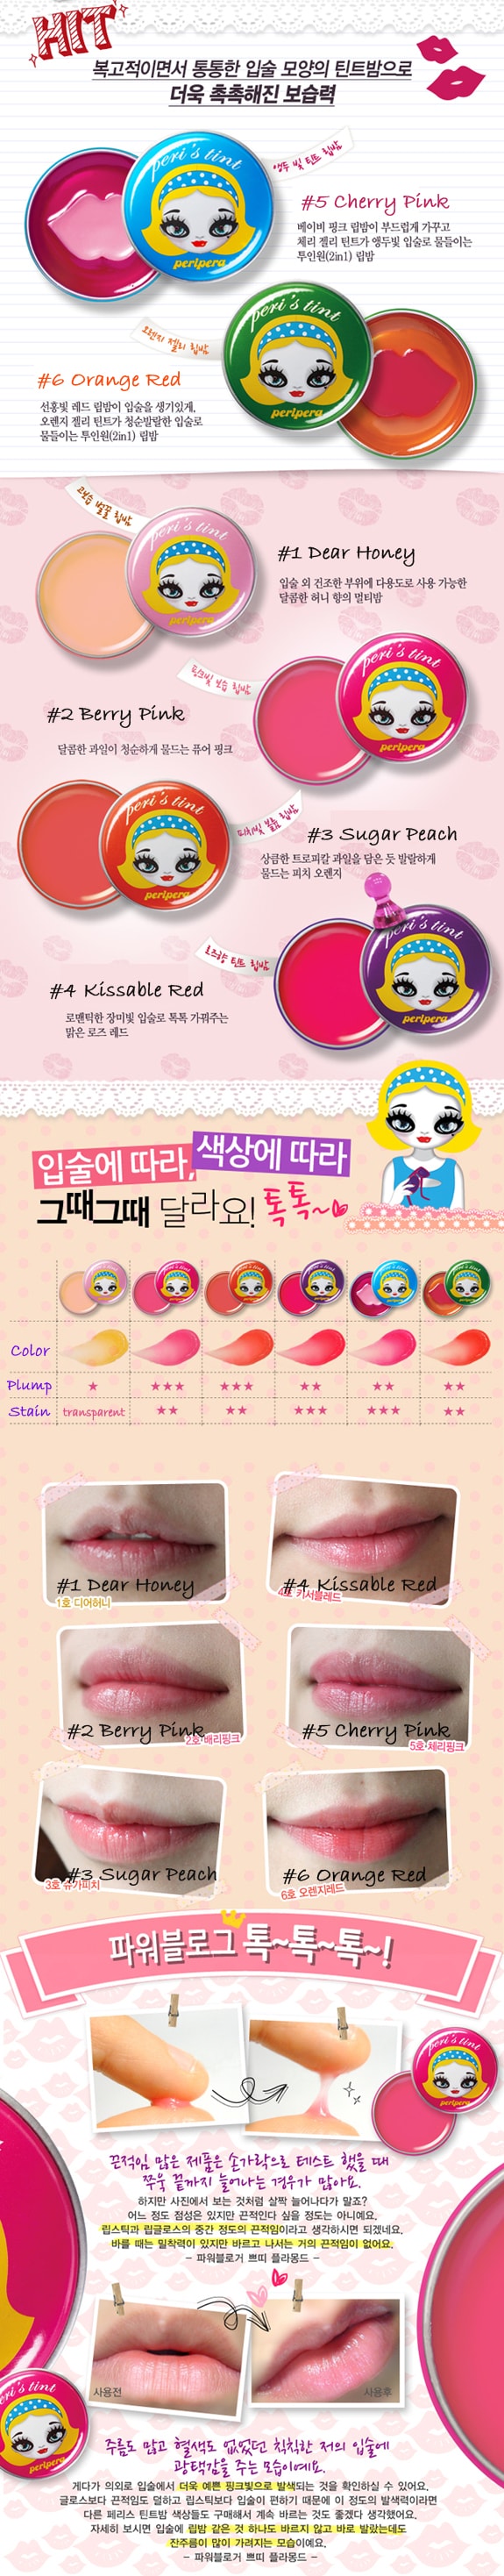 韓國 PERIPERA Peri's tint 護唇膏 #05 Cherry Pink 1pc